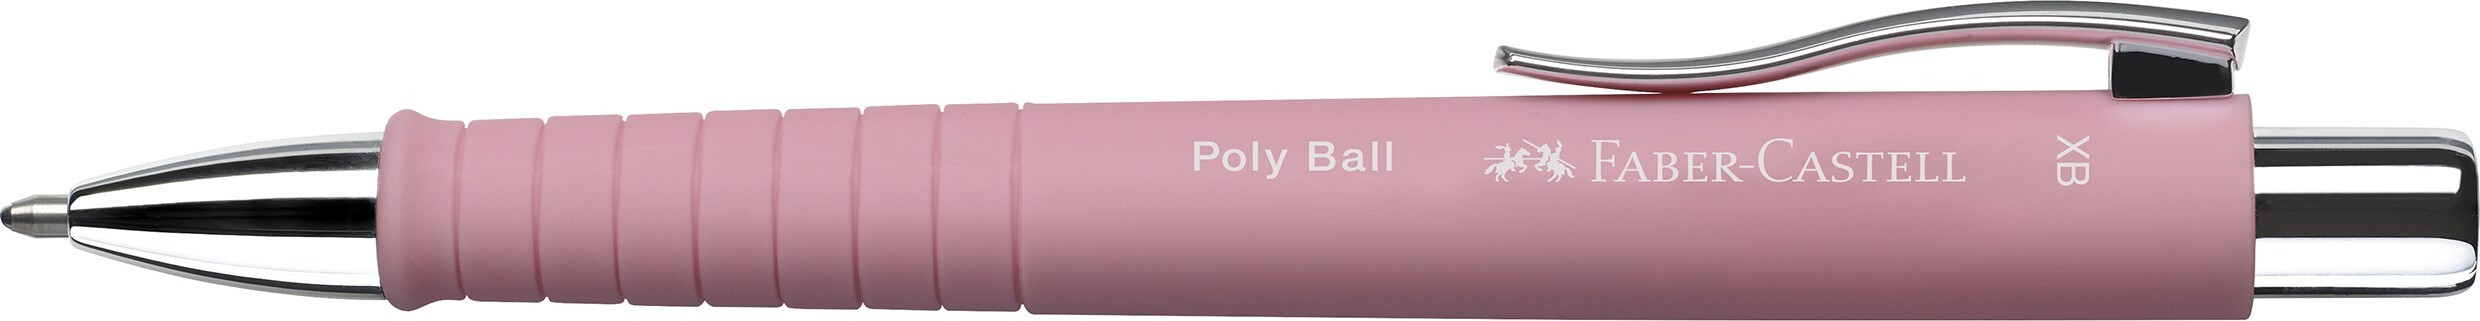 Faber-Castell Kugelschreiber Poly Ball XB rose